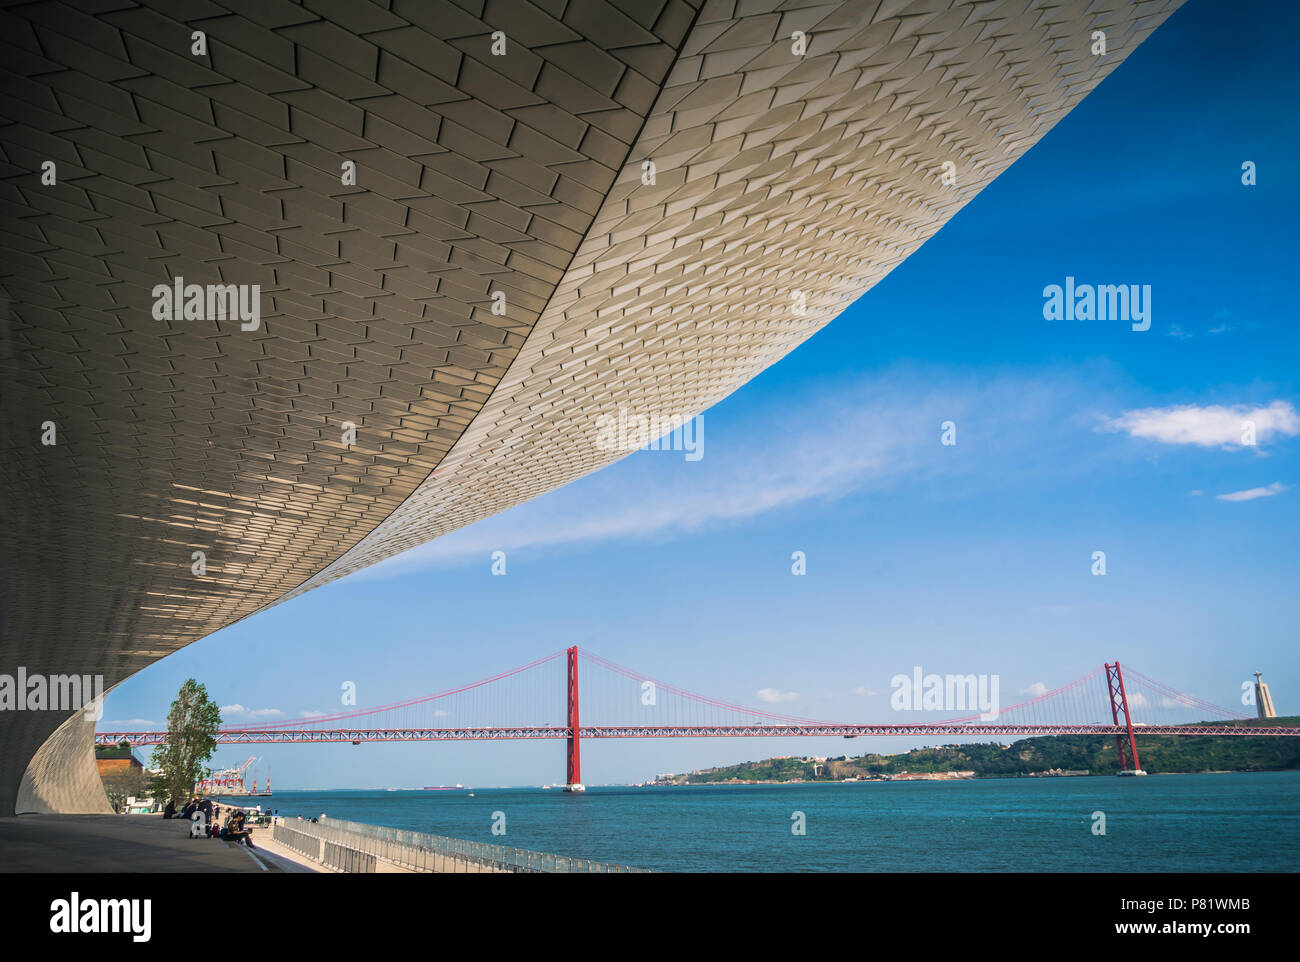 Lisbona, Portogallo, Museum Maat (Museu Arte, Arquitetura, tecnologia). Famoso ponte 25 de Abril sullo sfondo. Si estende per 2277,64 m. Foto Stock